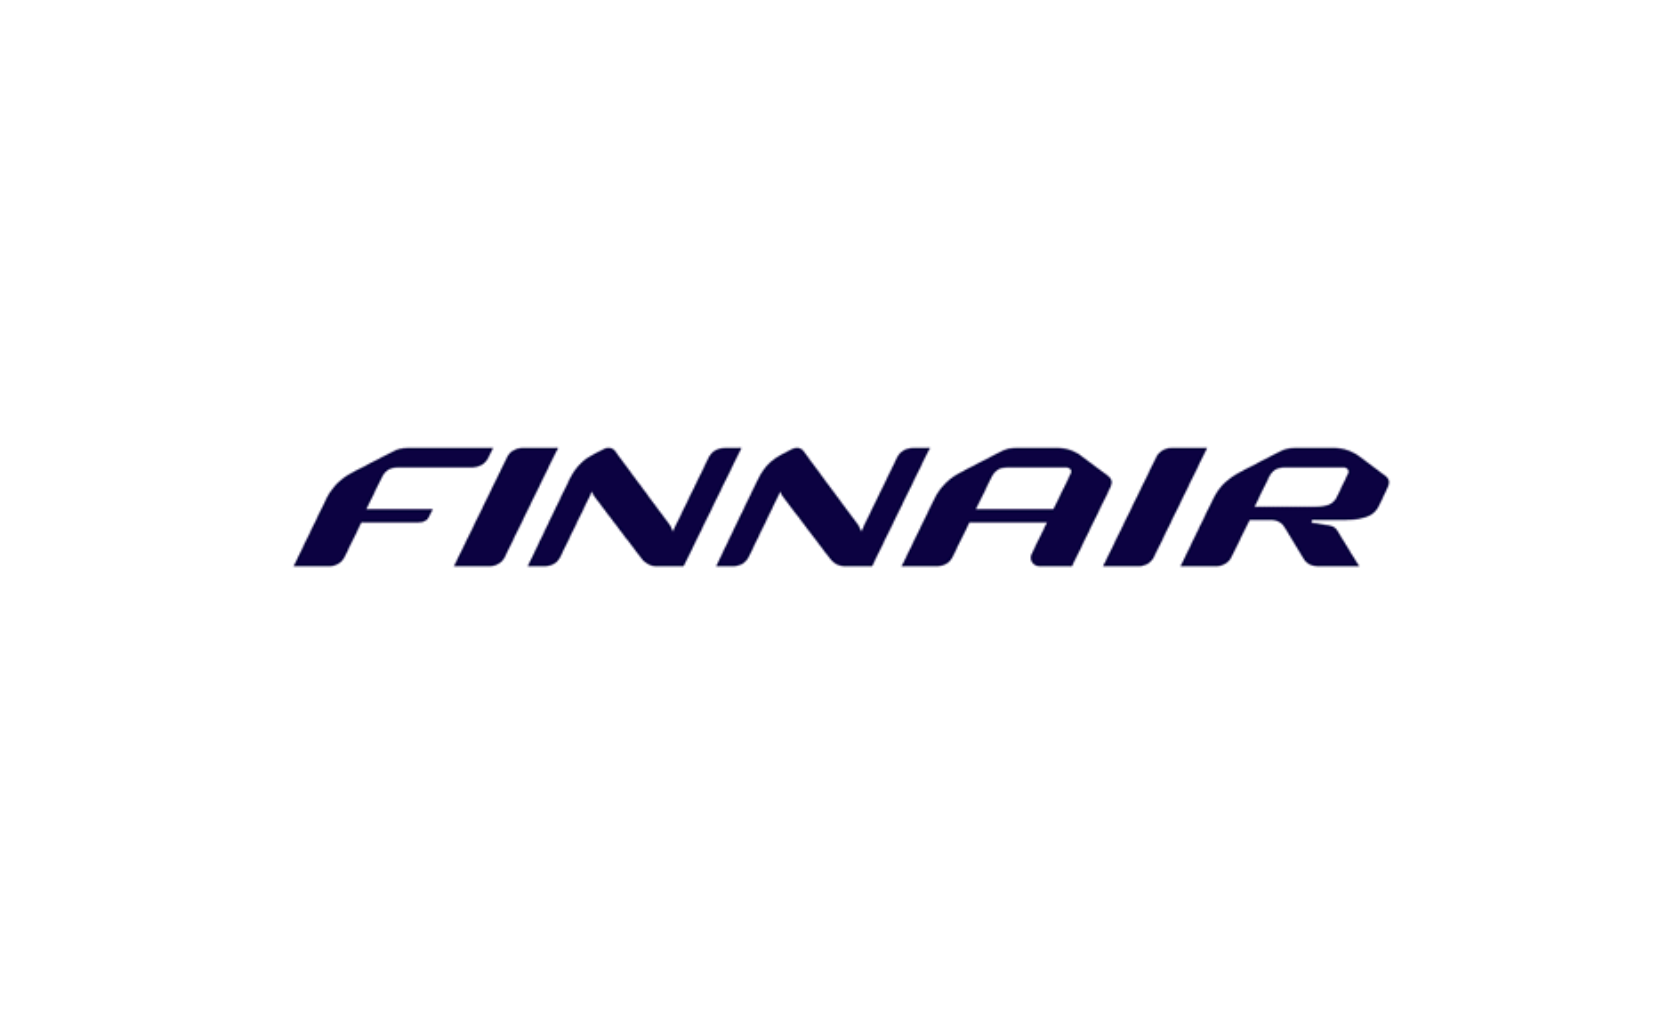 Finnair.png